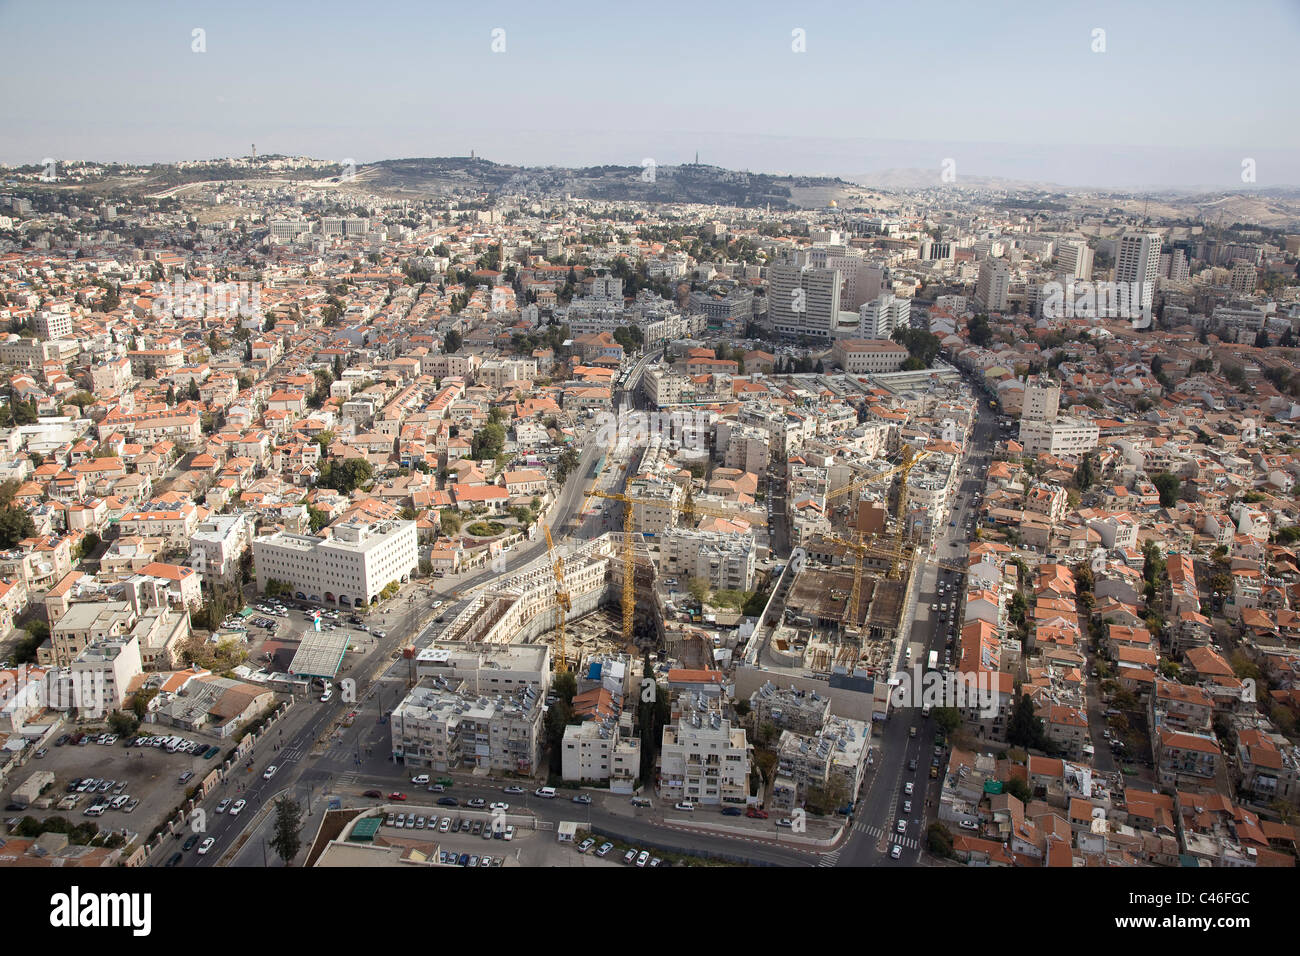 Fotografía aérea del constraction del tren ligero en la ciudad de Jerusalén Foto de stock